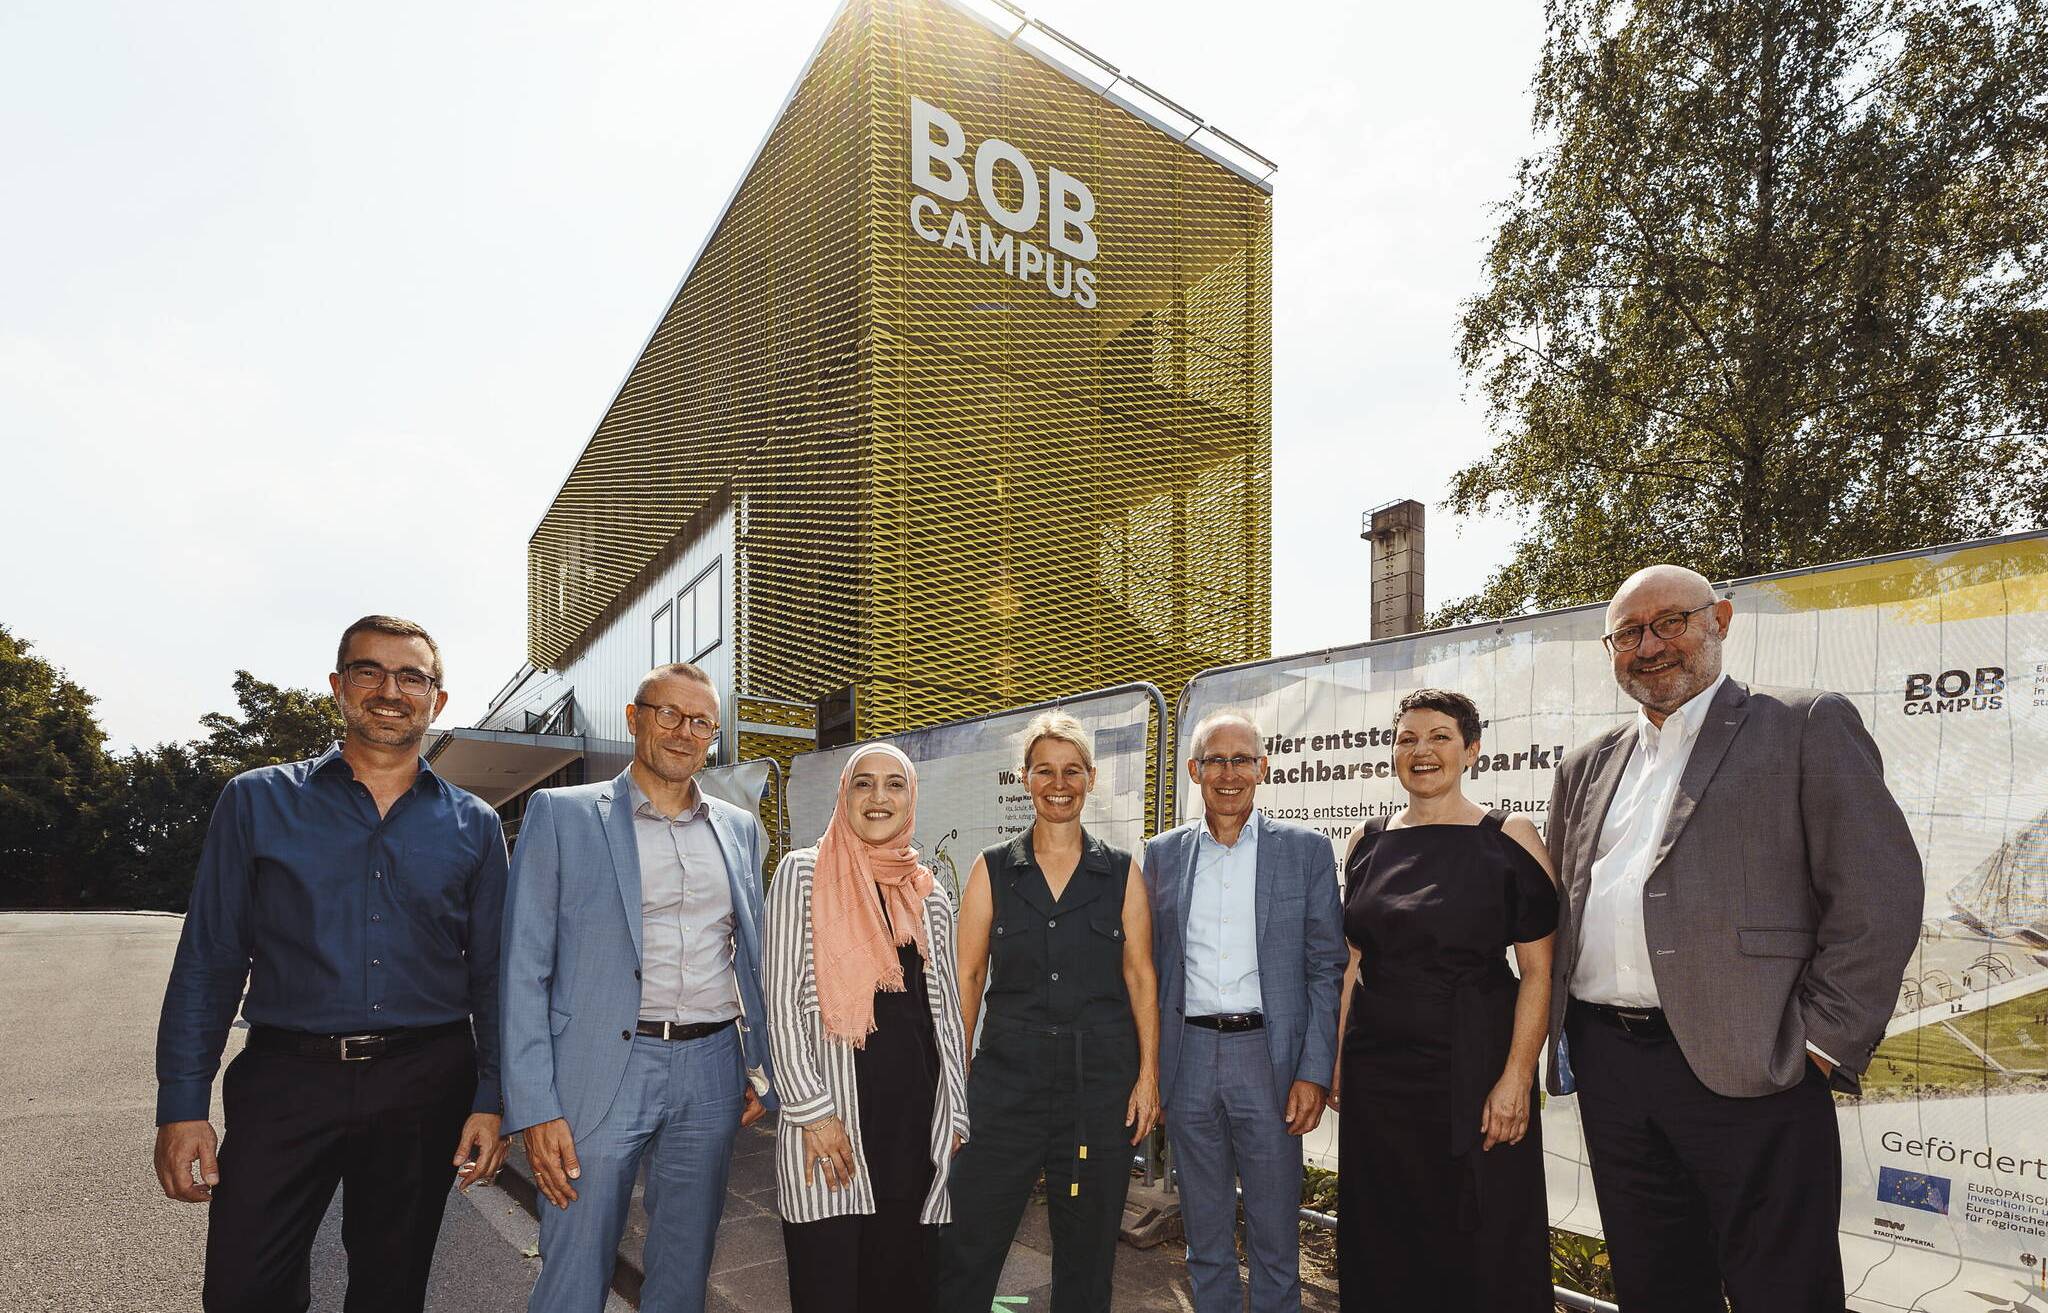  Die Eröffnung des BOB Campus im Augist 2022. 